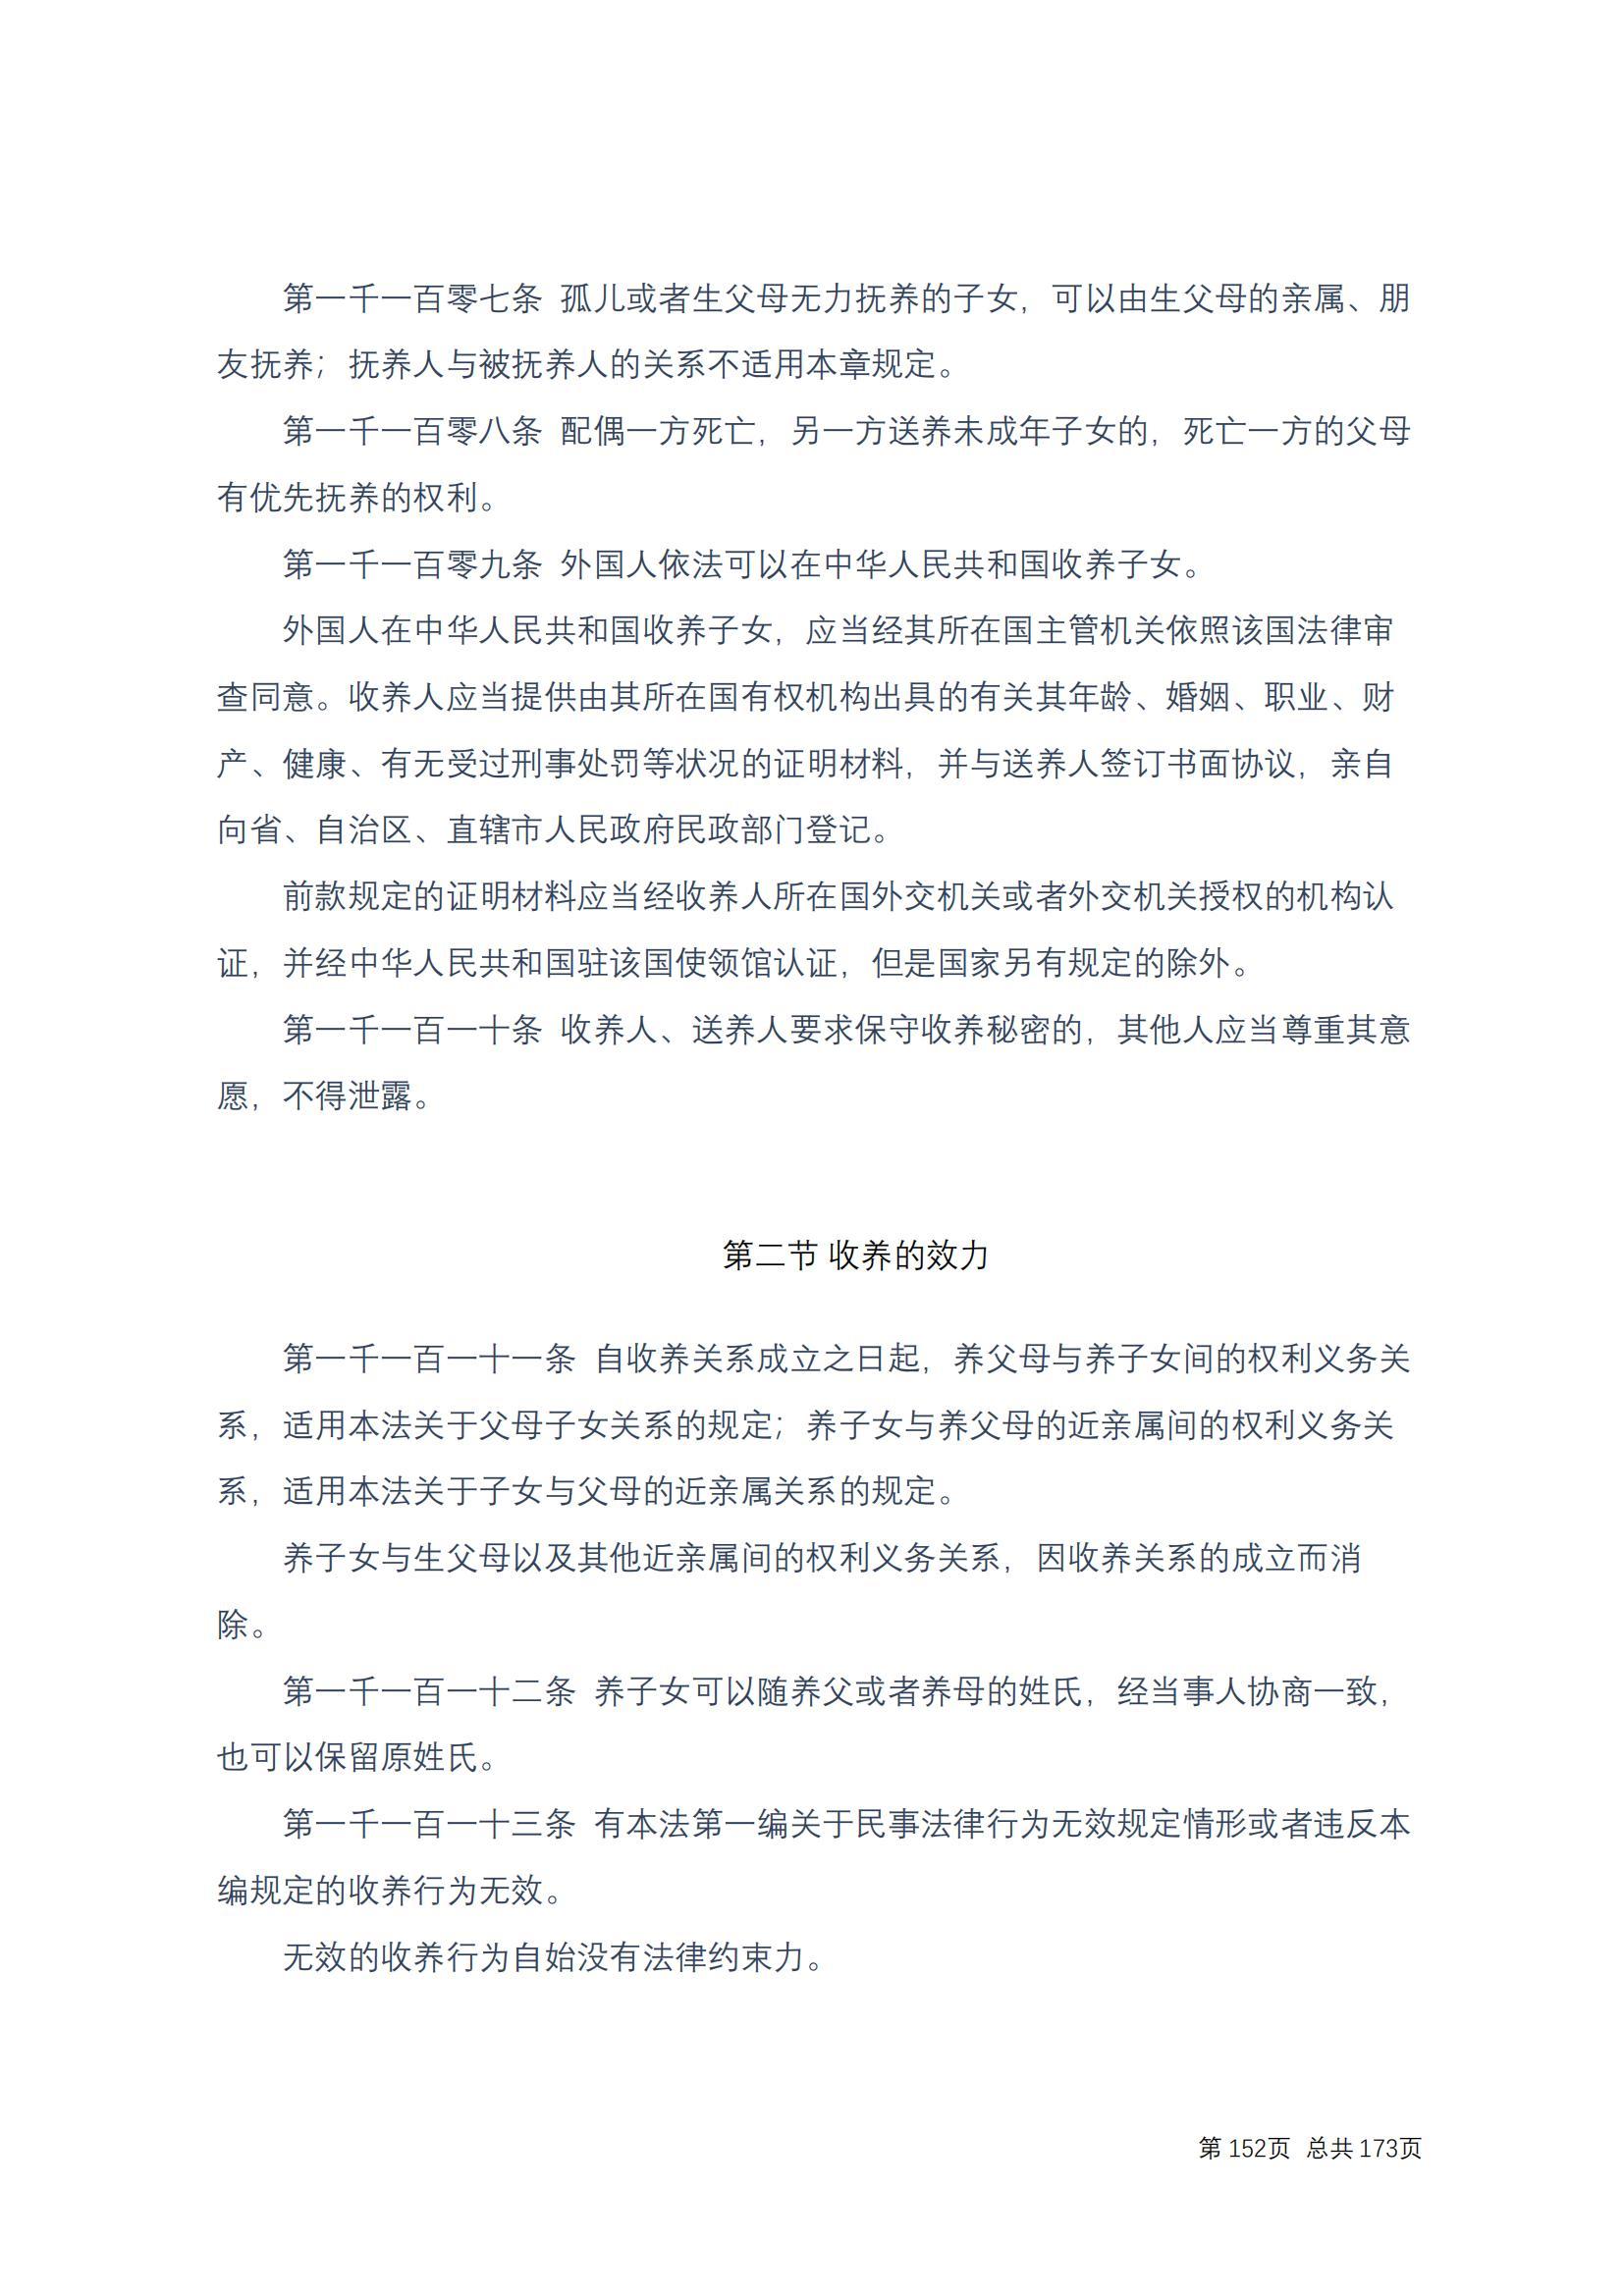 中华人民共和国民法典 修改过_151